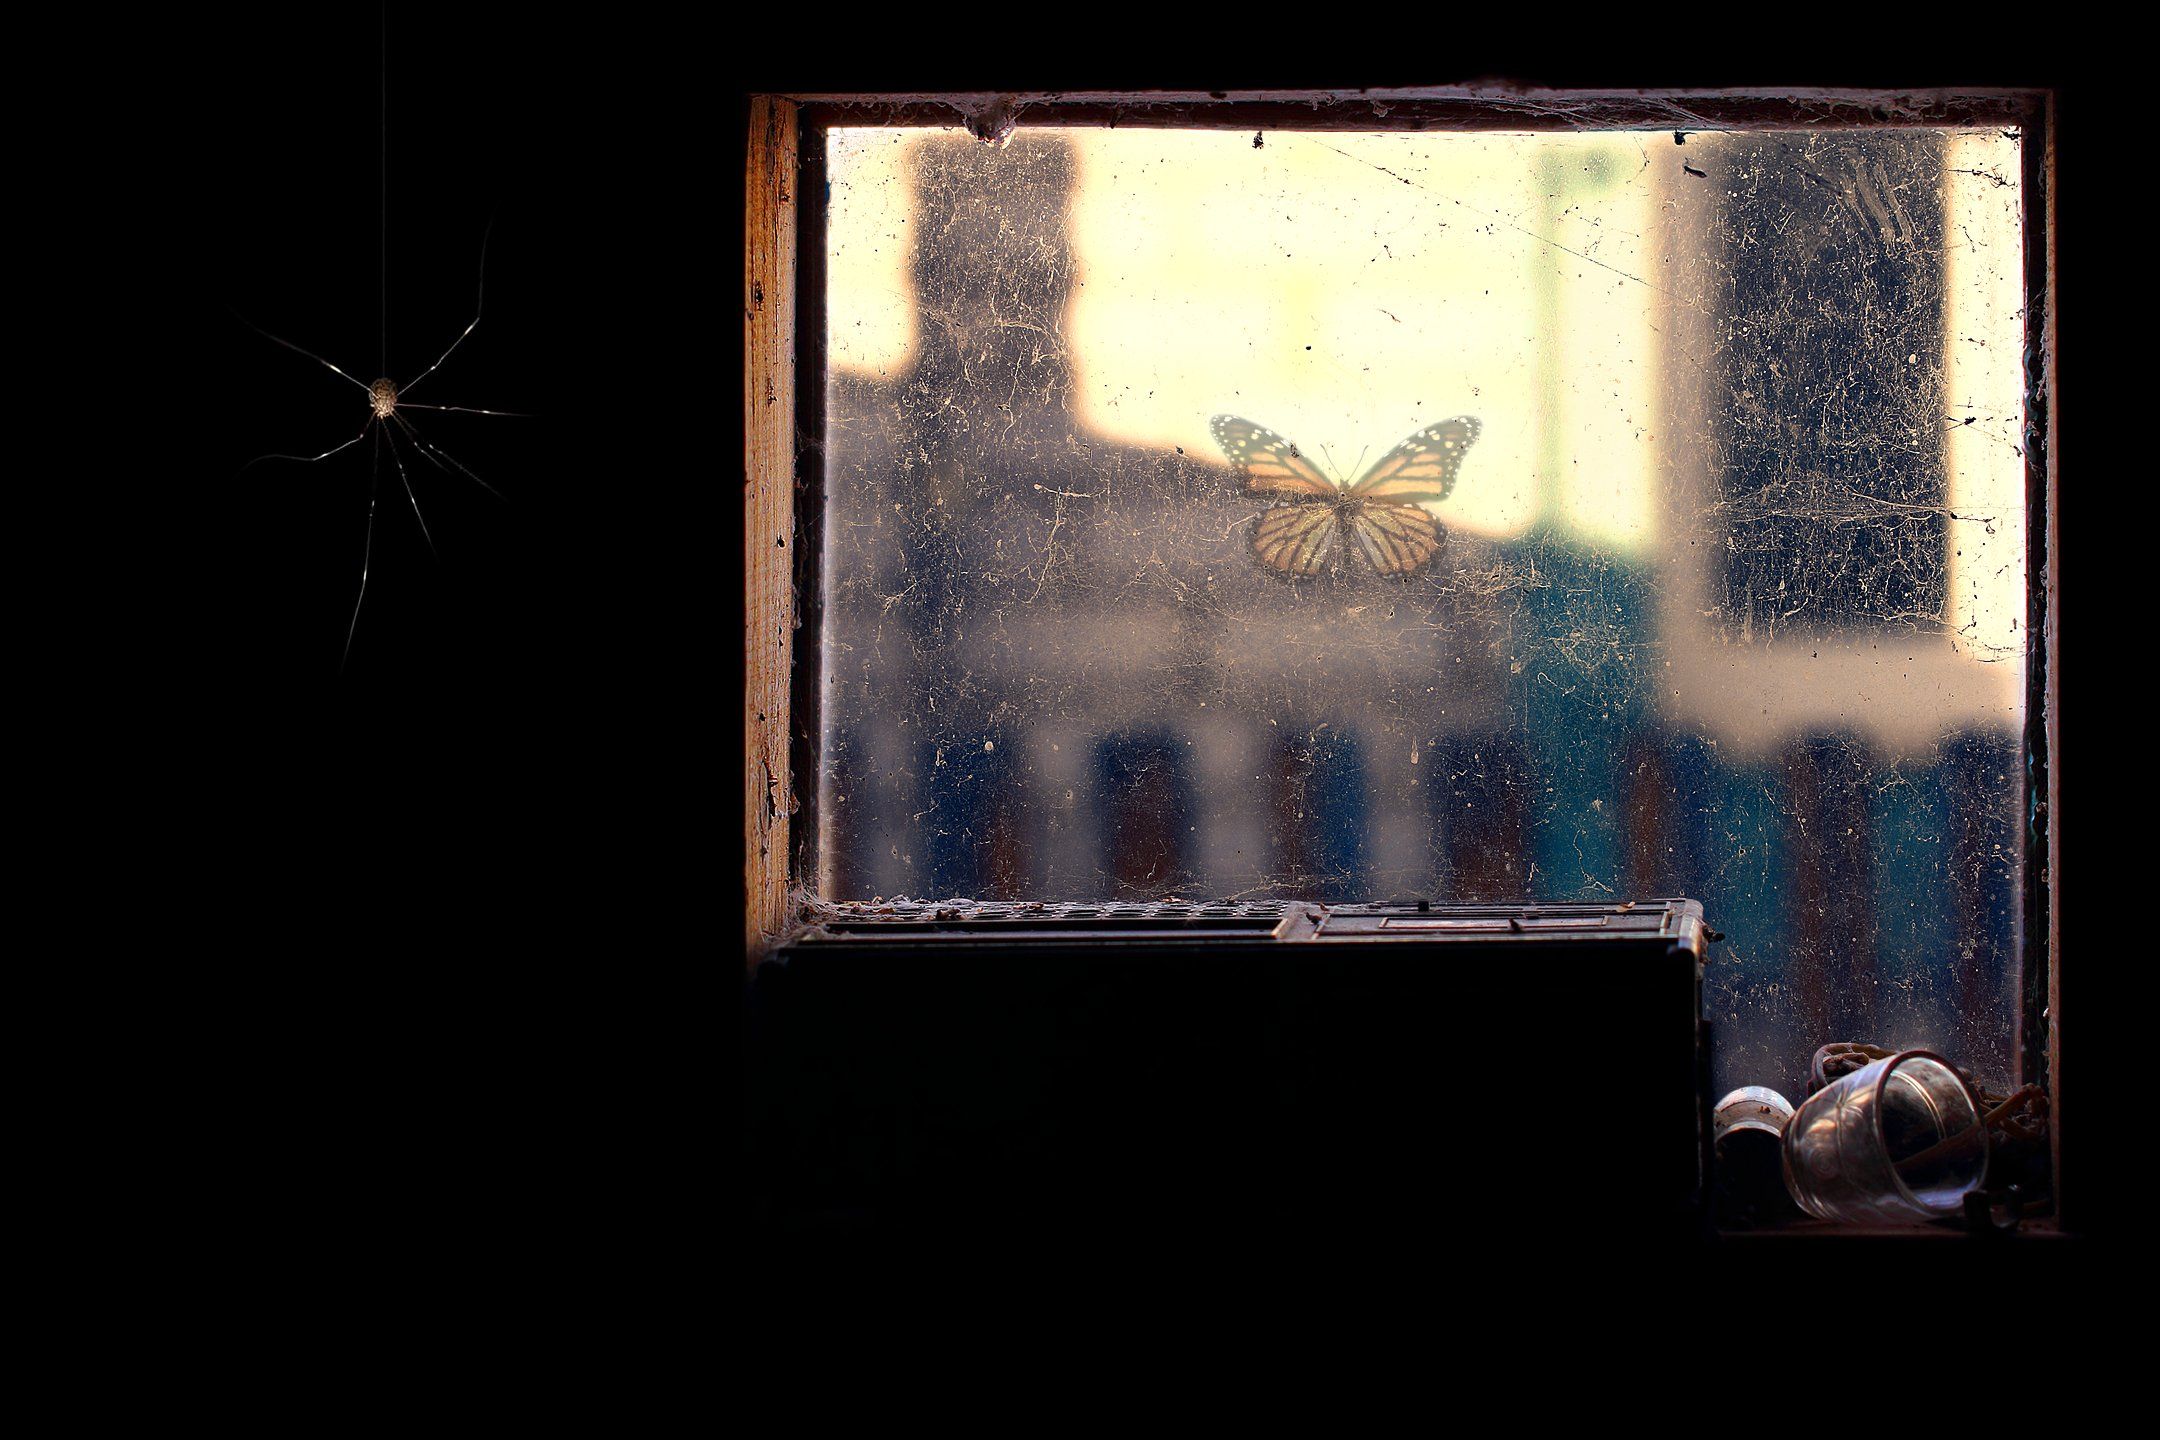 креатив, обработка, концепция, окно, паук, concept, window, home, spider, dark, Дмитрий Салтыков